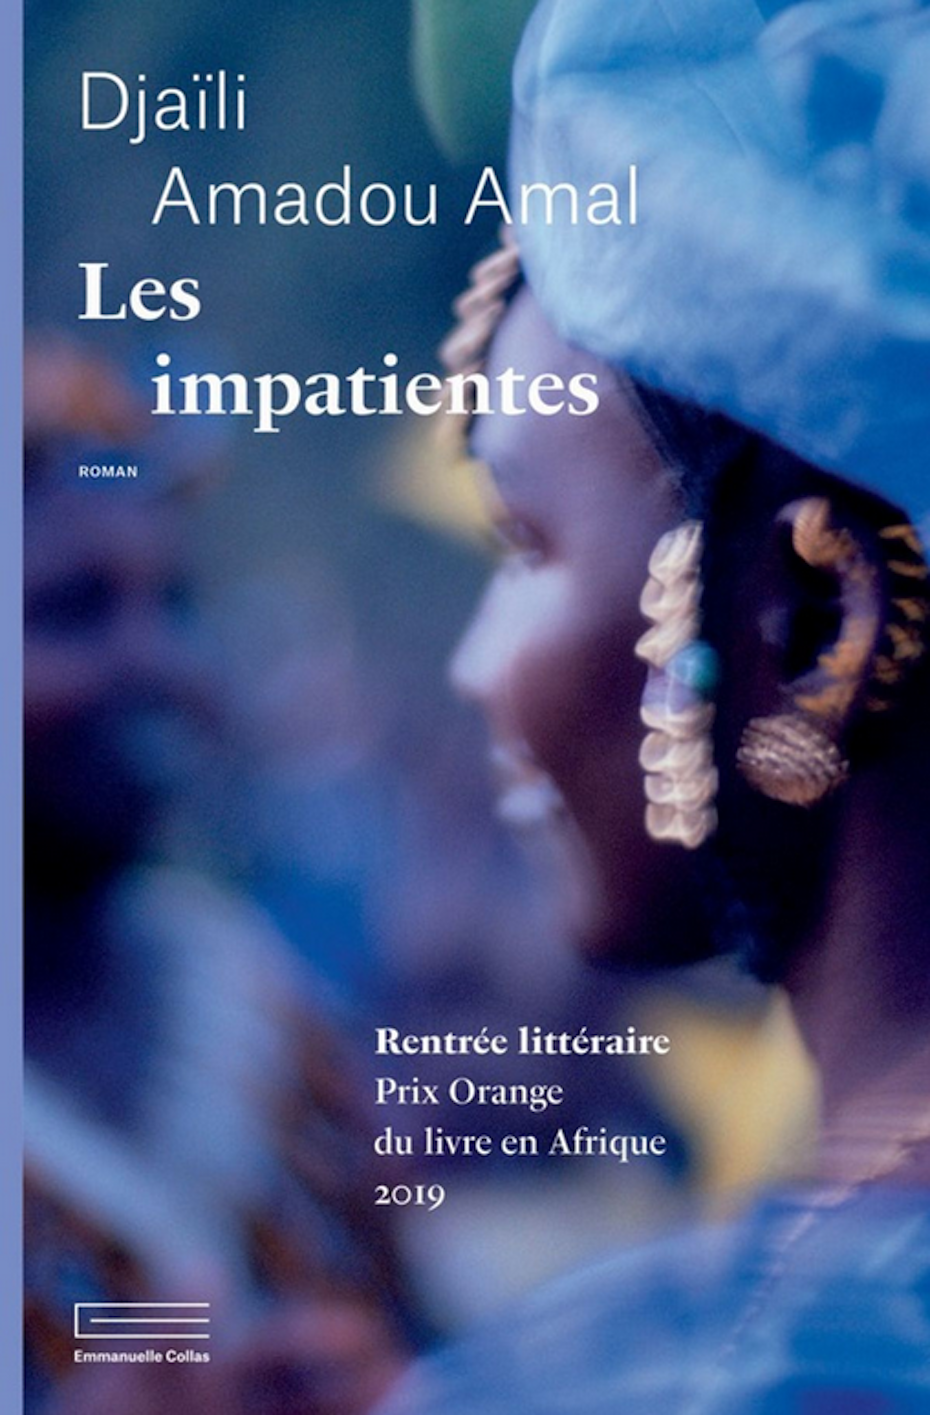 Djaïli Amadou Amal, Les impatientes (Emmanuelle Collas)